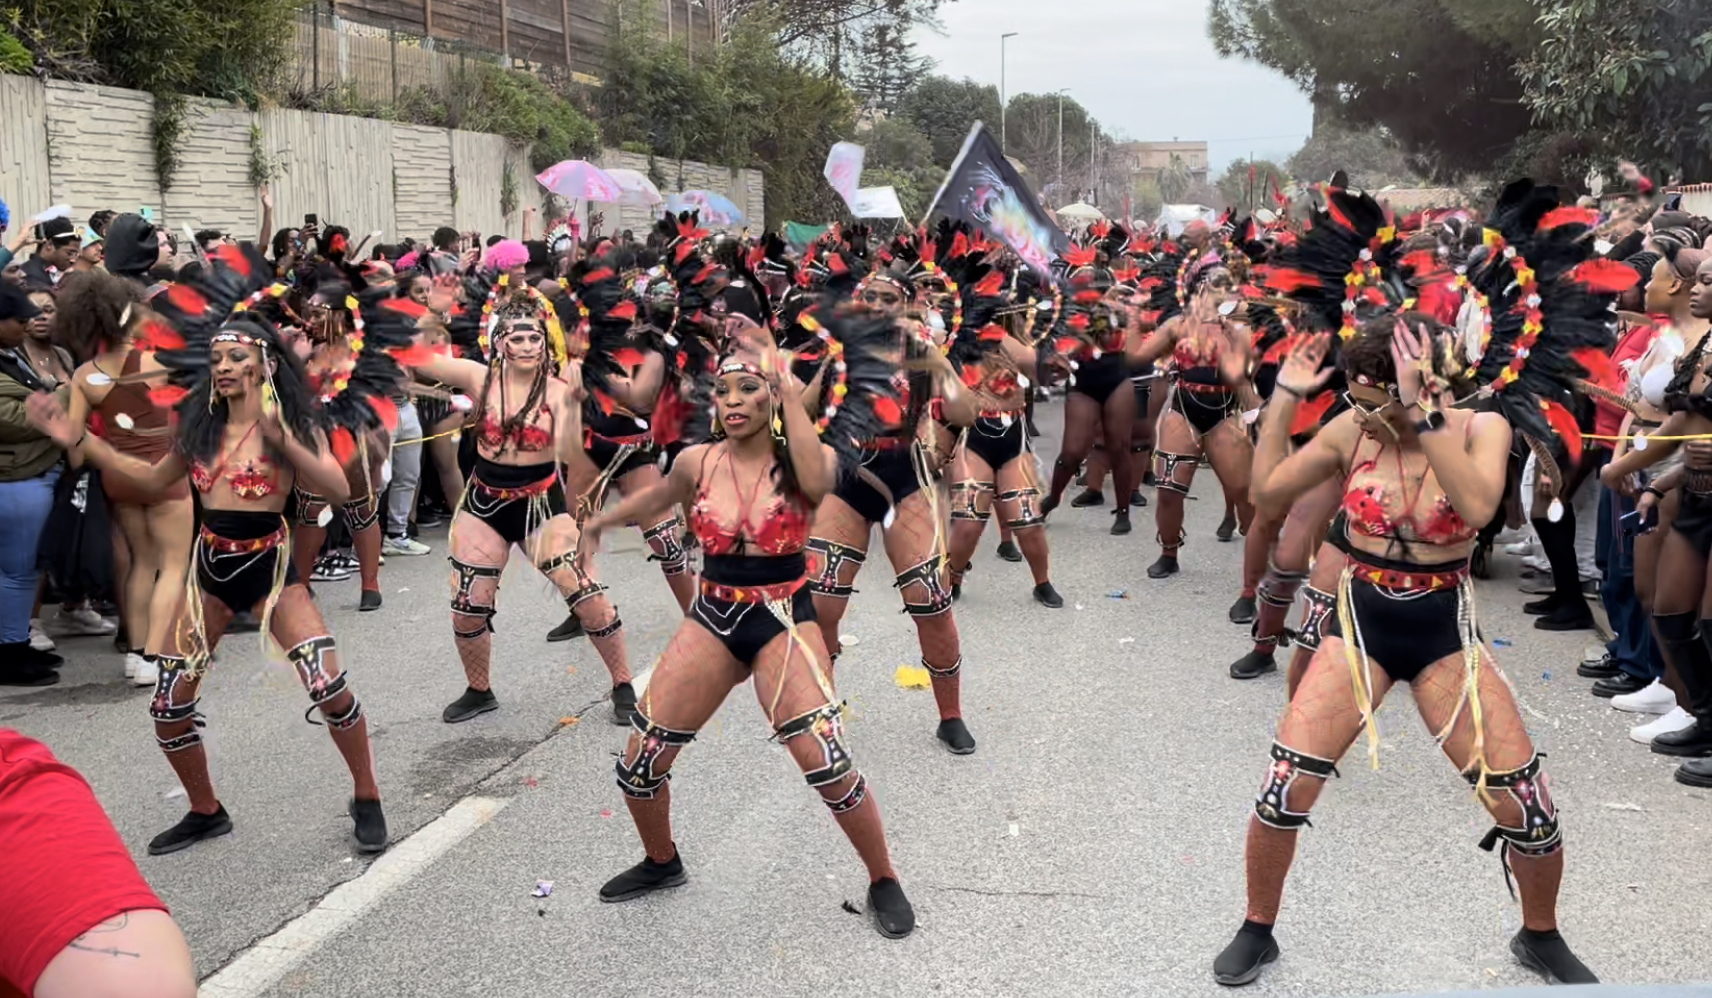     Le « Montpel Carnival » veut partager la folie carnavalesque des Antilles dans l'Hexagone

